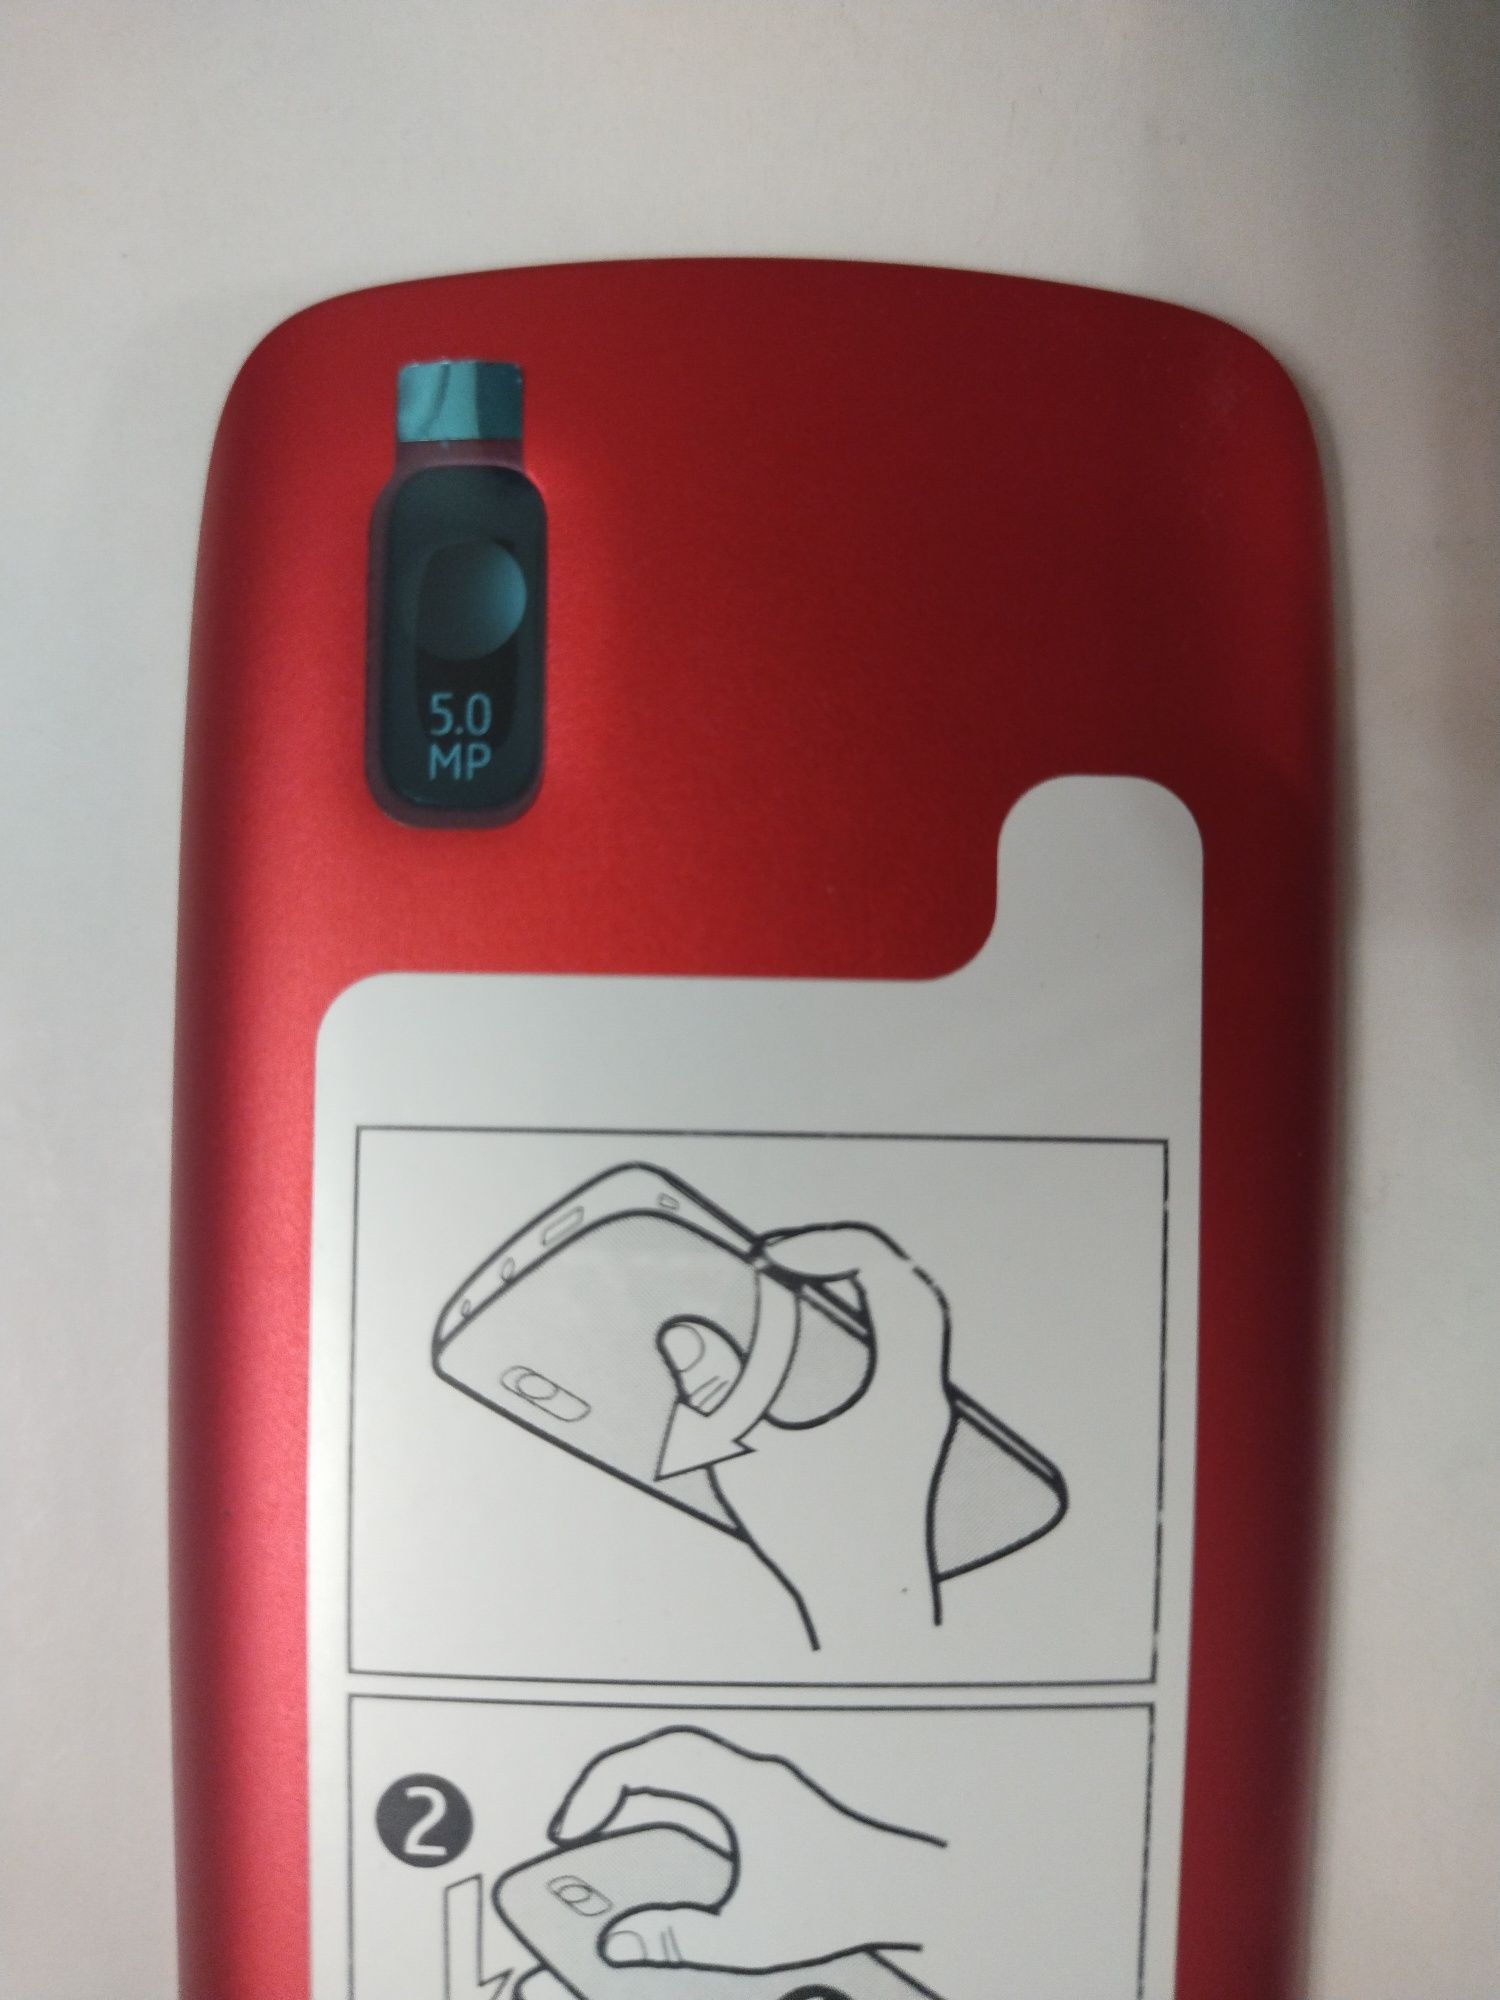 Крышка на заднюю часть корпуса телефона Nokia 300, на аккумулятор